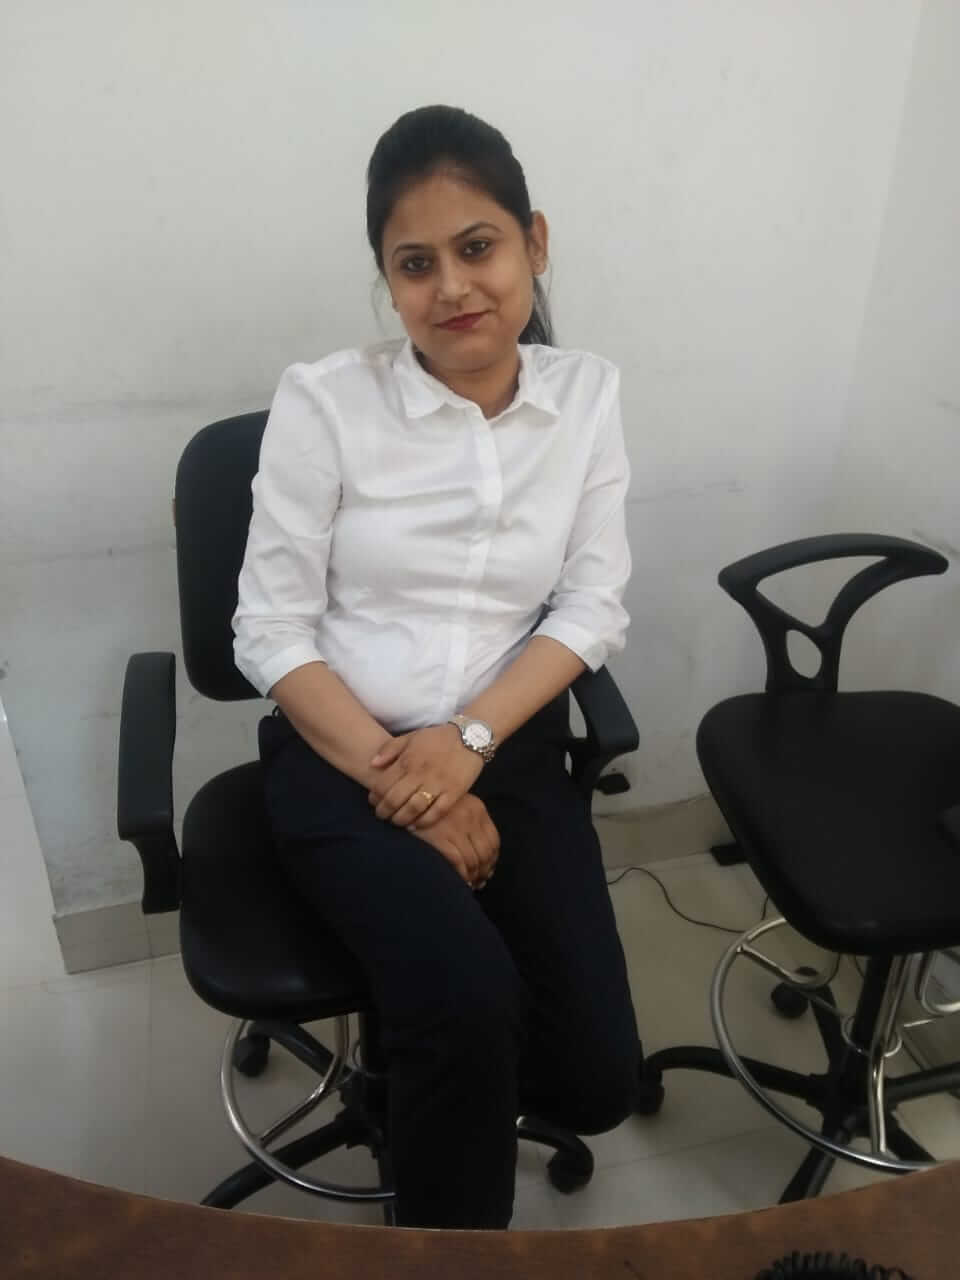 Ms. Madhuri Khurana